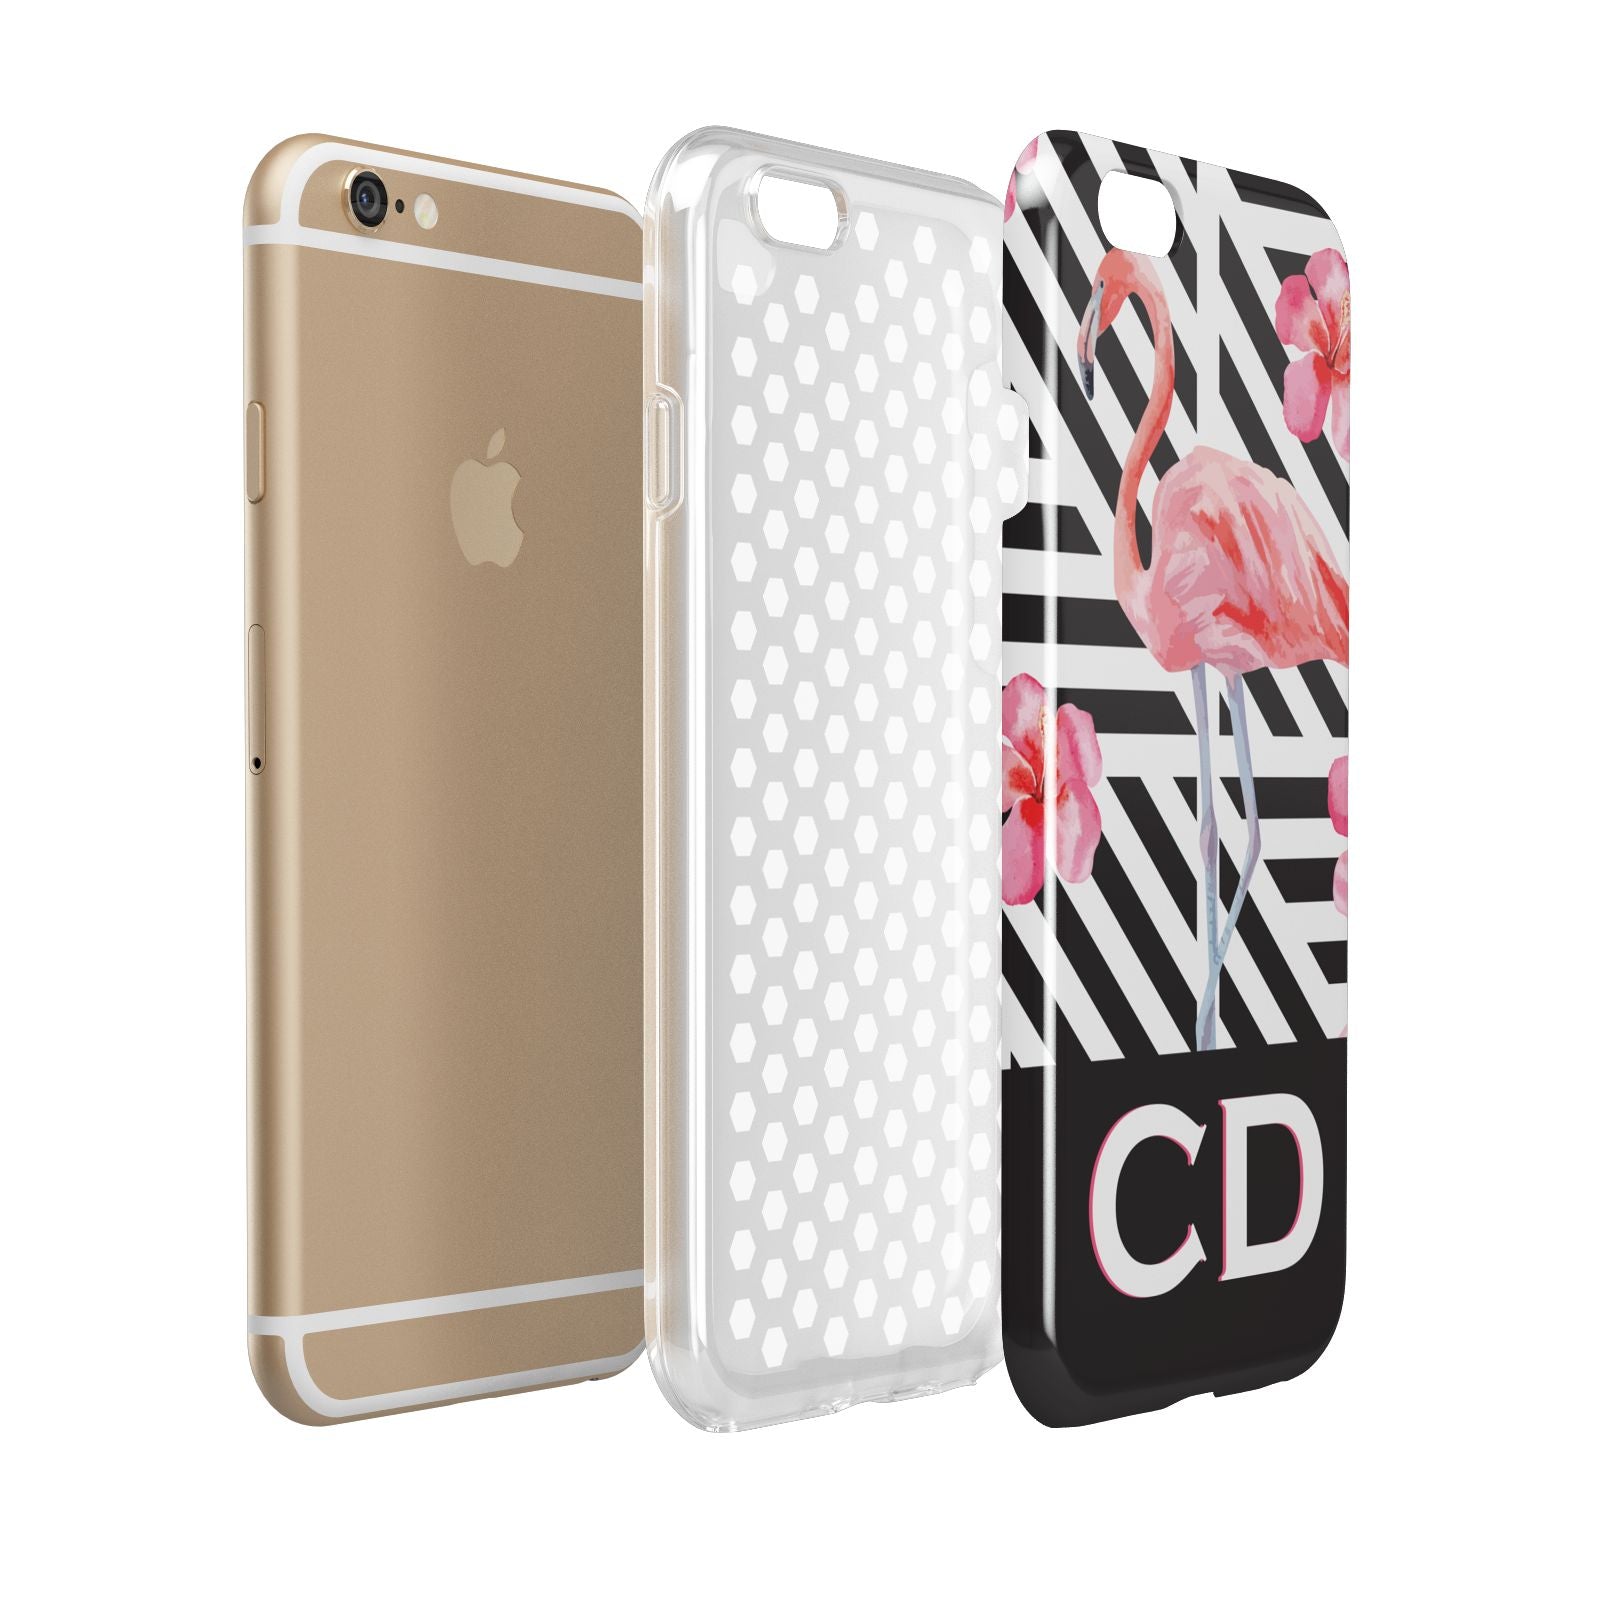 Flamingo Black Geometric Apple iPhone 6 3D Tough Case Expanded view